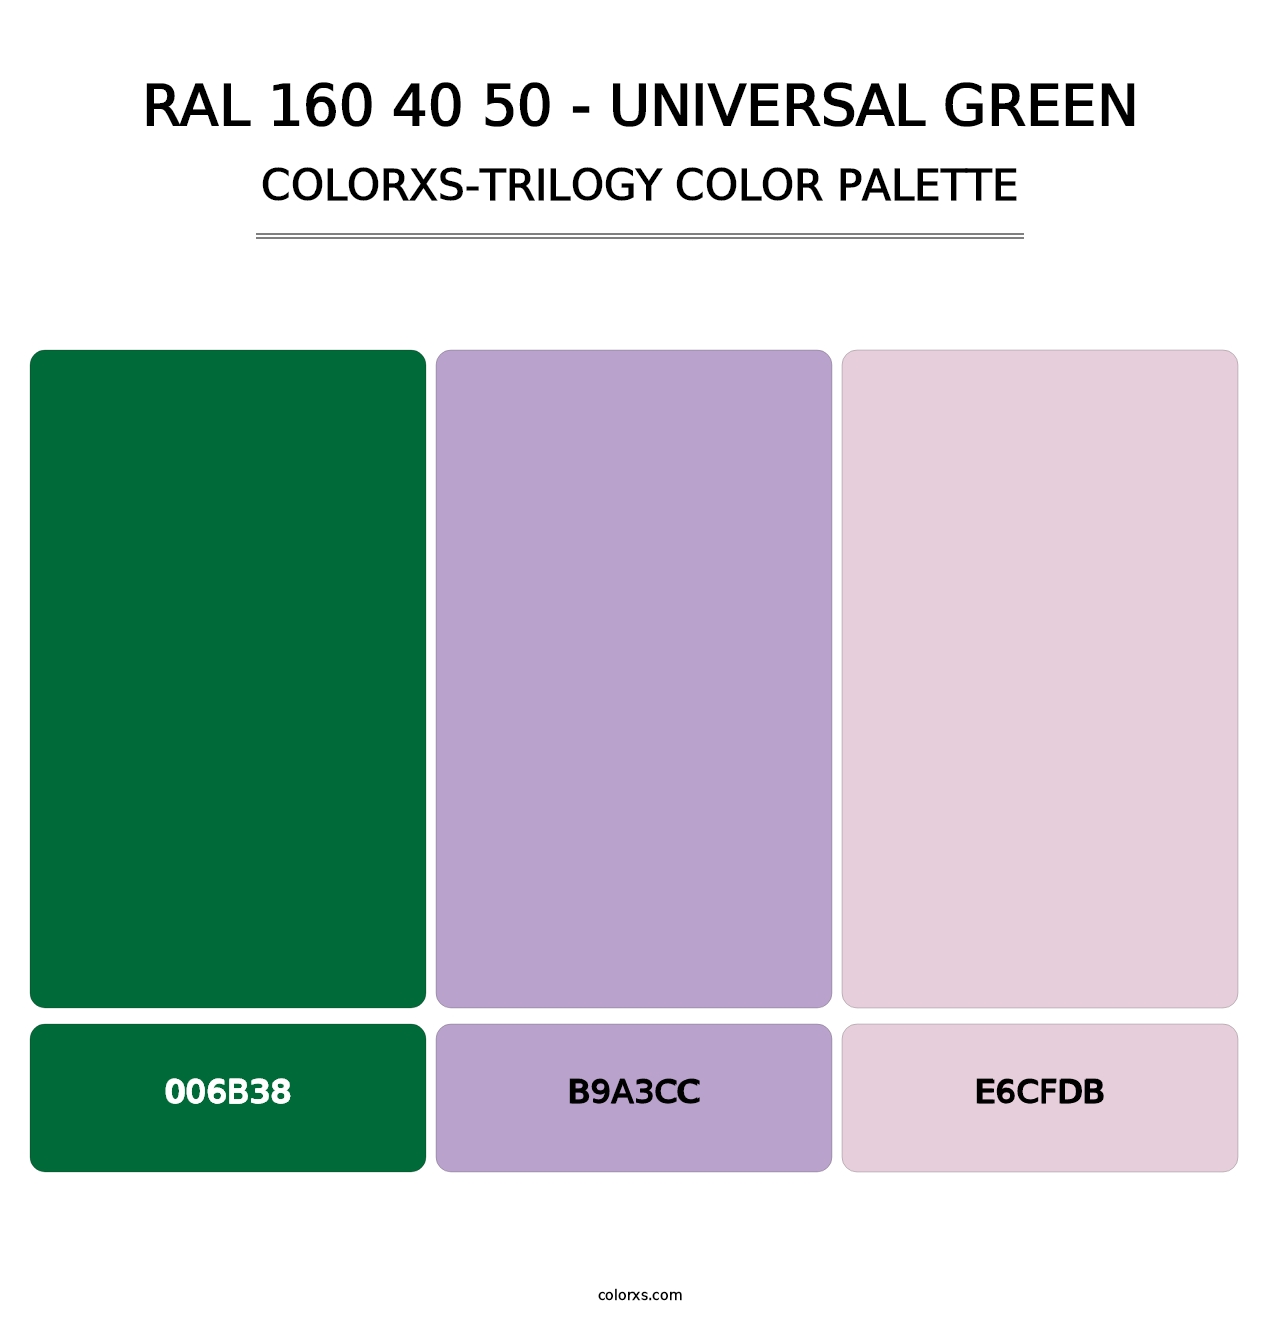 RAL 160 40 50 - Universal Green - Colorxs Trilogy Palette